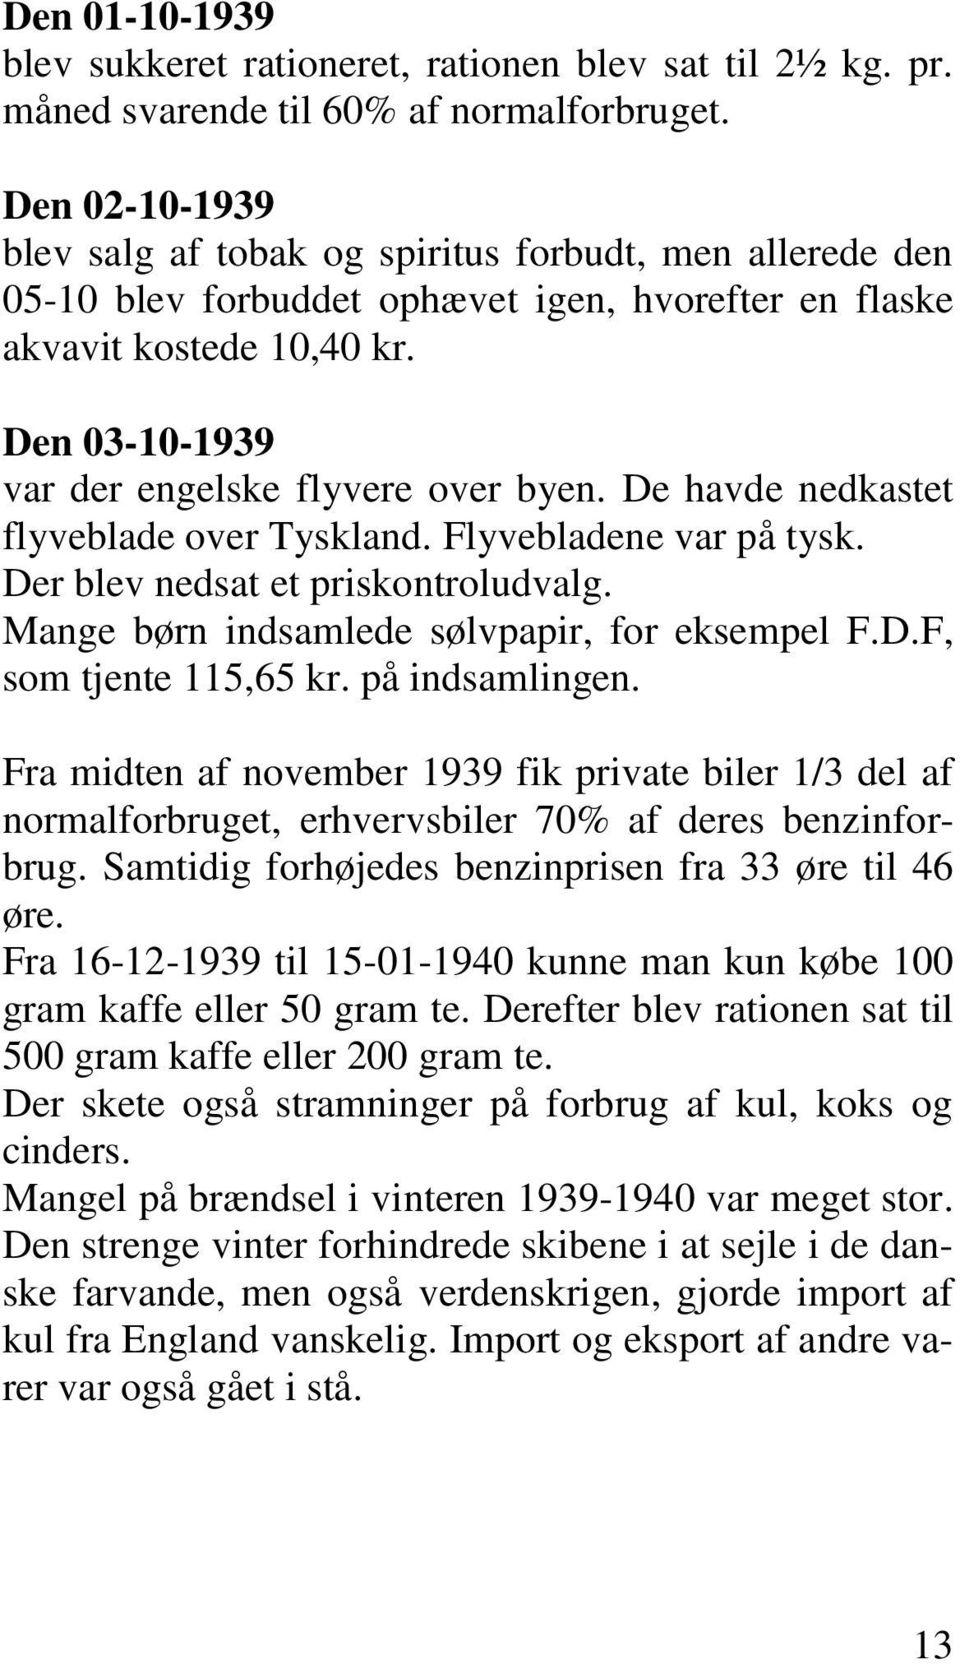 Den 03-10-1939 var der engelske flyvere over byen. De havde nedkastet flyveblade over Tyskland. Flyvebladene var på tysk. Der blev nedsat et priskontroludvalg.